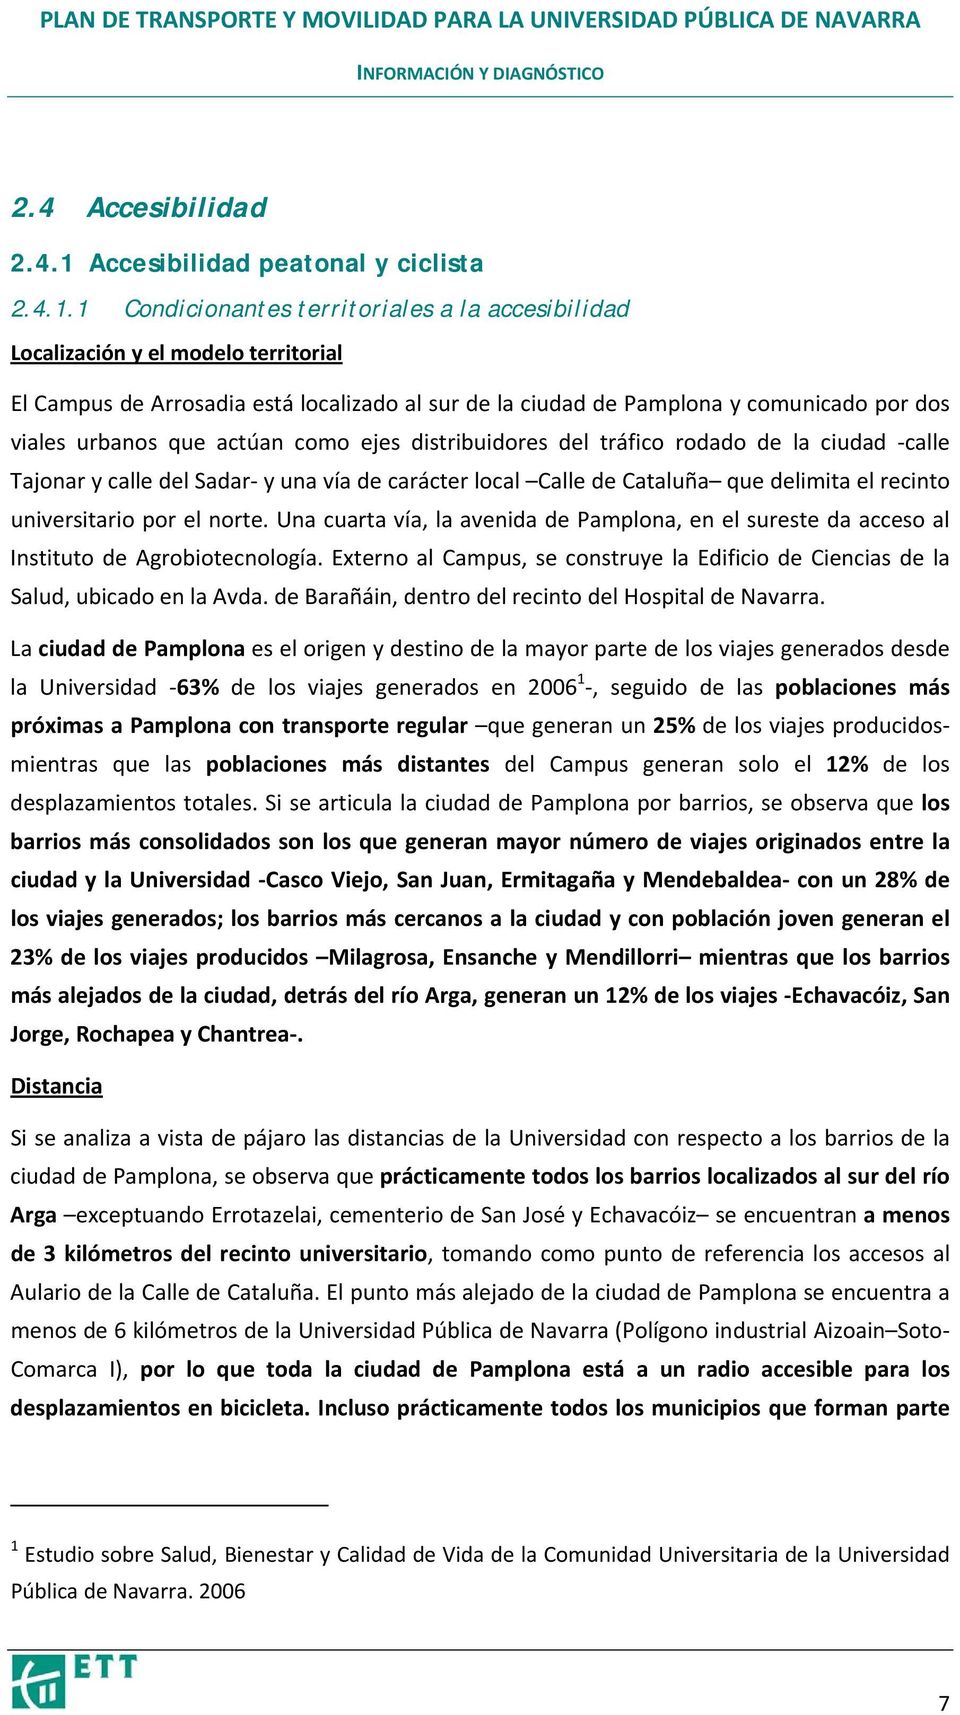 1 Condicionantes territoriales a la accesibilidad Localización y el modelo territorial El Campus de Arrosadia está localizado al sur de la ciudad de Pamplona y comunicado por dos viales urbanos que